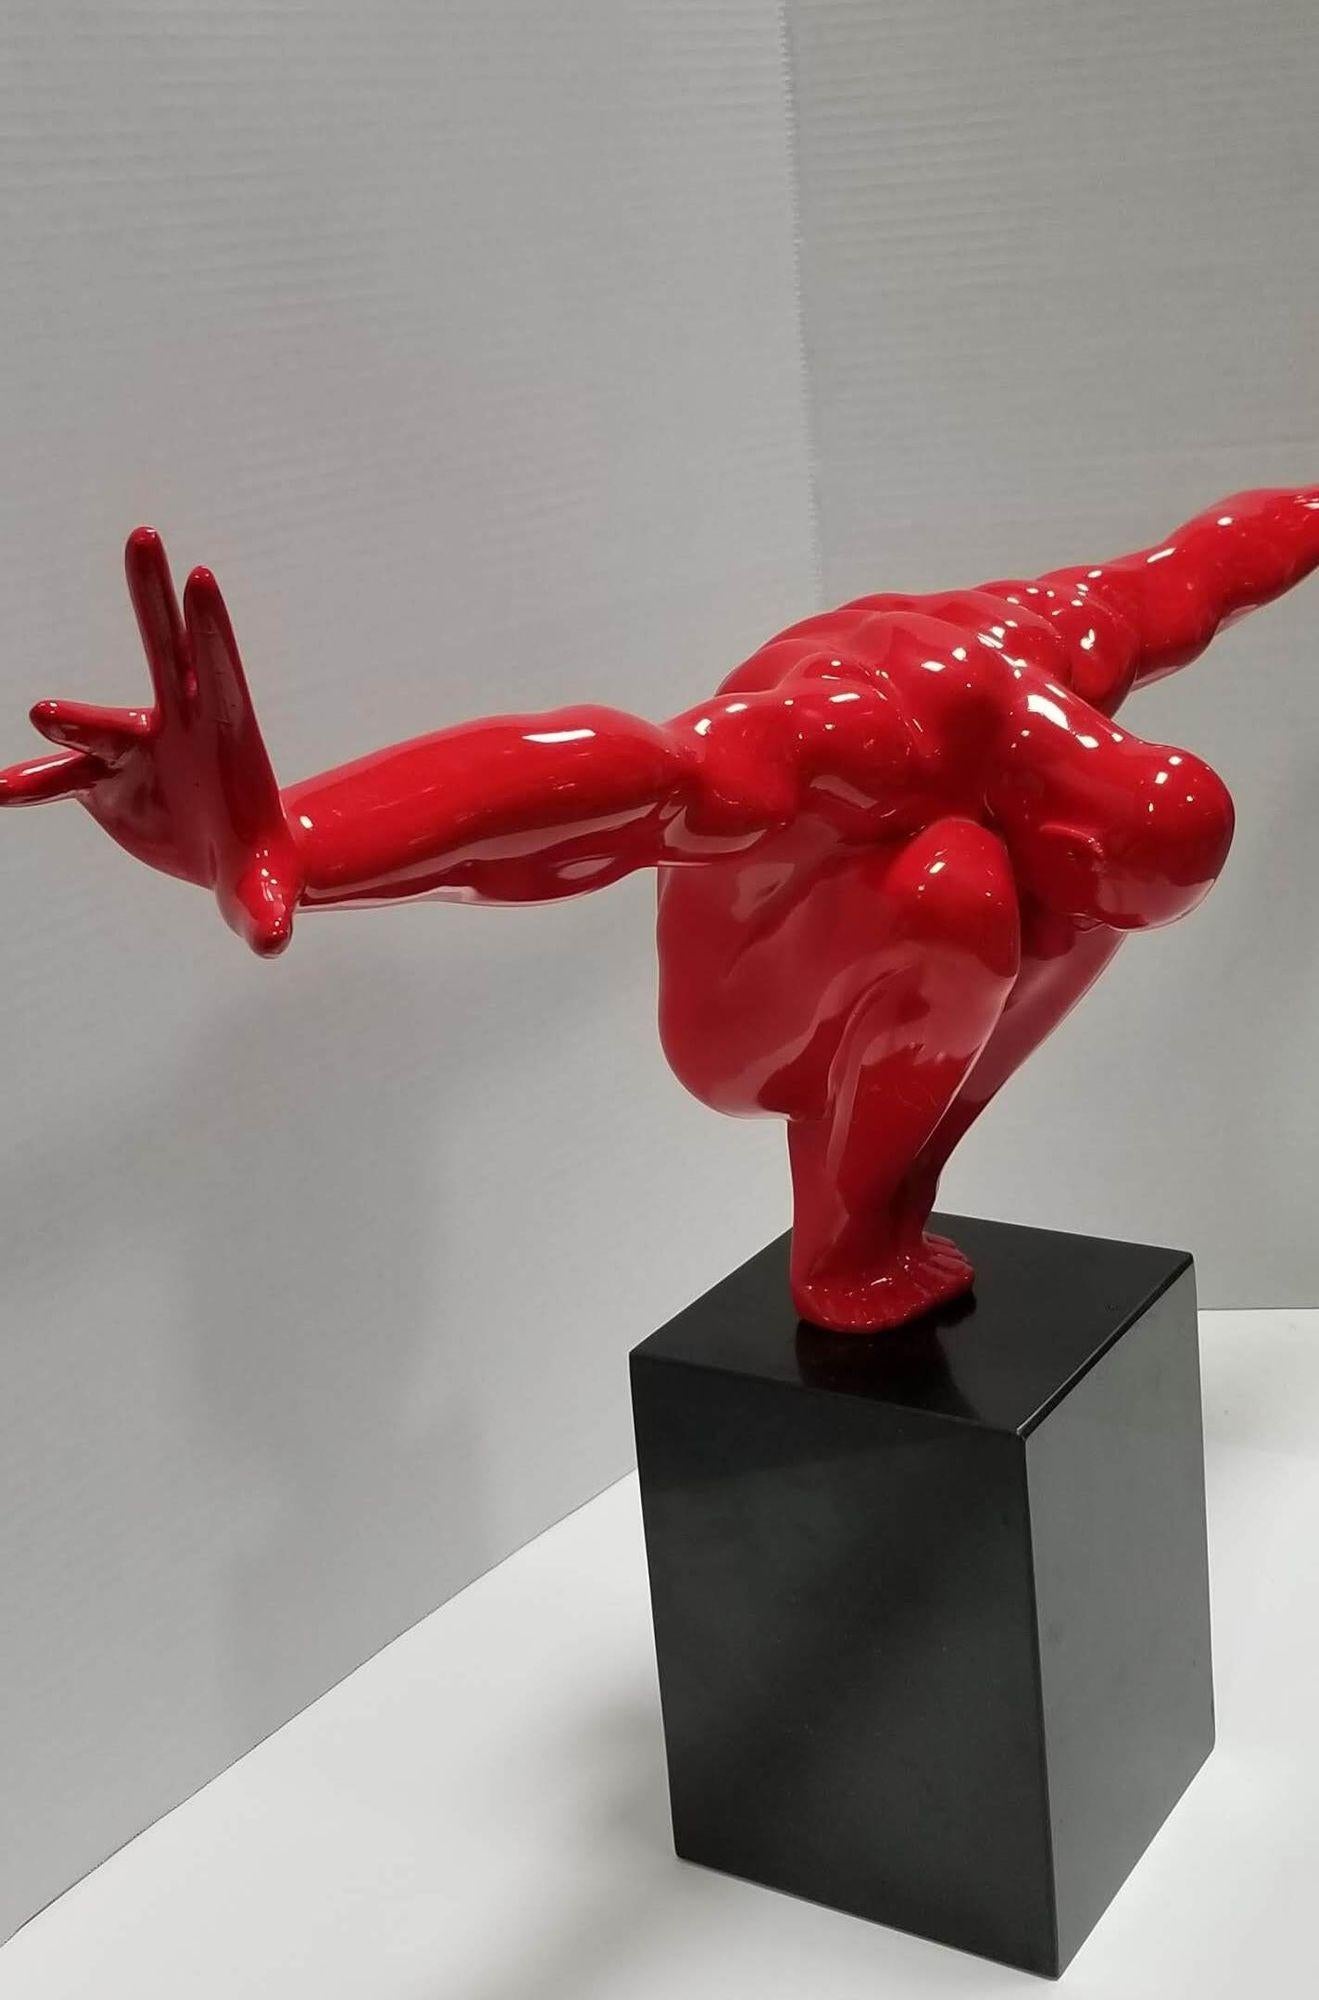 La sculpture de l'homme rouge est une pièce de décoration étonnante, qui ajoute une touche de sophistication à toute maison ou bureau. Cette sculpture masculine représente un homme accroupi aux bras tendus, symbolisant l'équilibre et l'expansion de